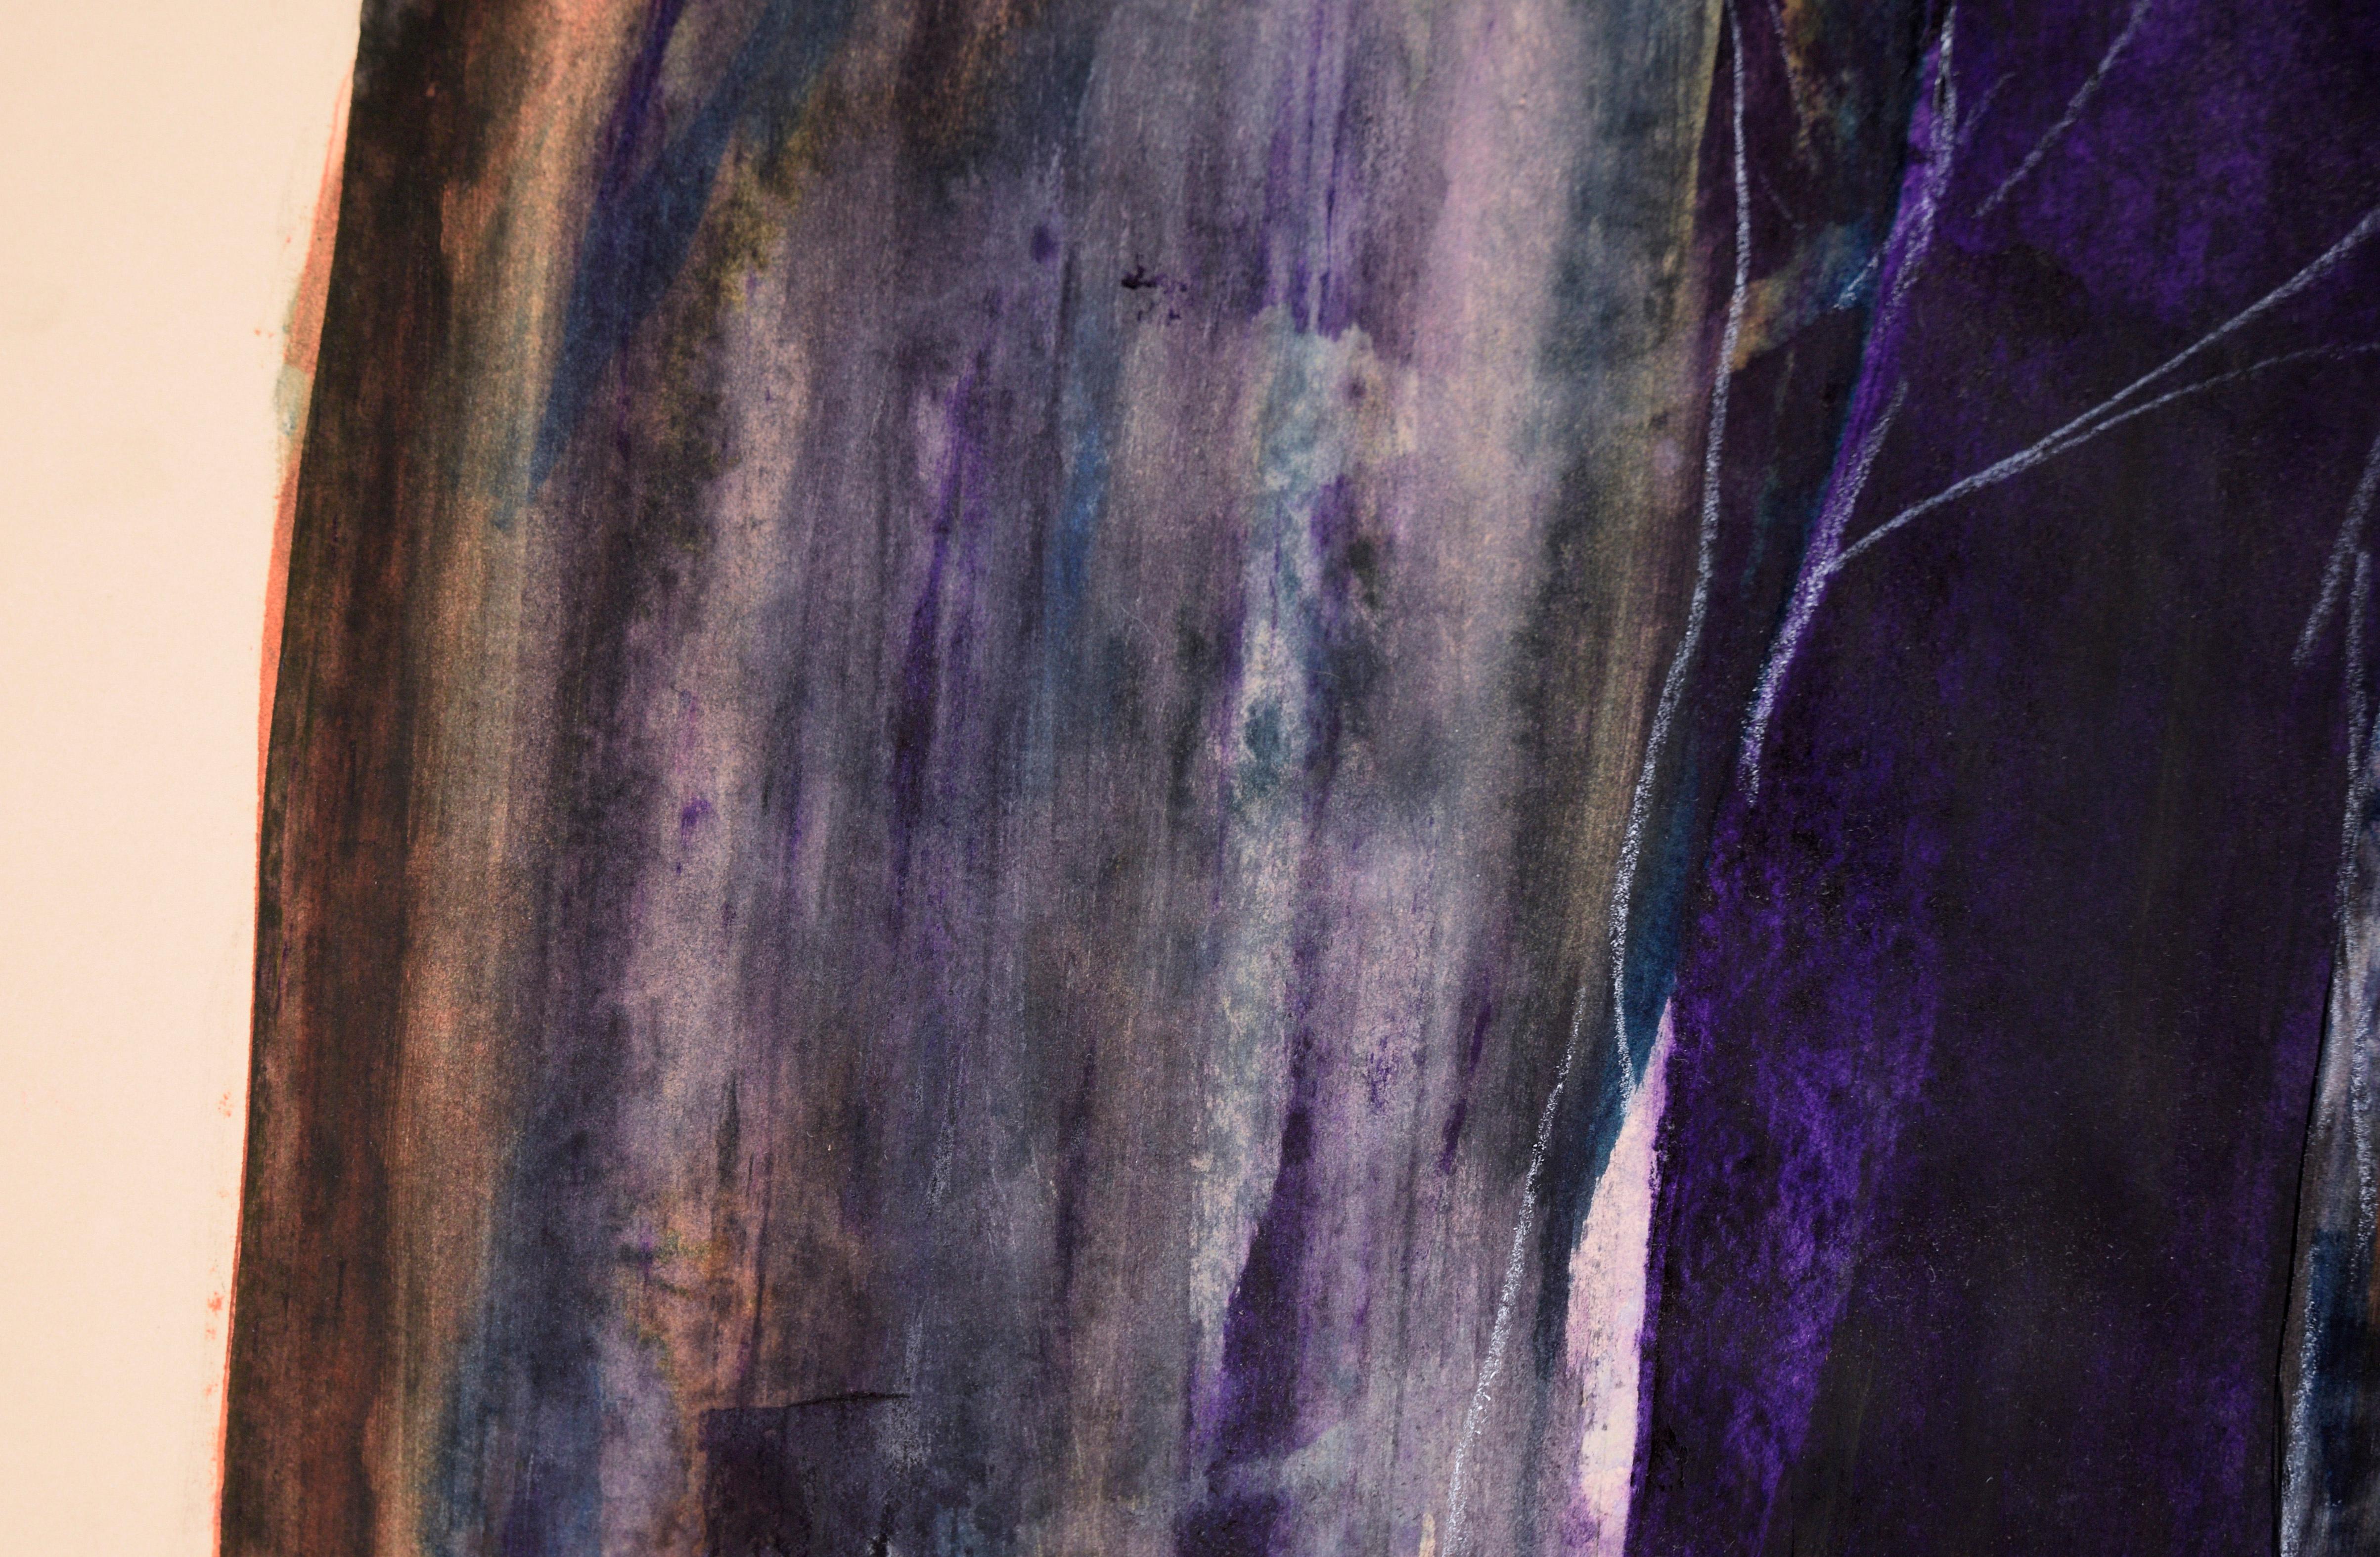 Nonne dans l'ombre - Composition figurative à l'acrylique sur papier

Portrait sombre et abstrait de l'artiste californien Ricardo de Silva (Américain/Brésil, C.C.). Cette pièce est composée de taches abstraites de violet, de gris et de jaune, avec